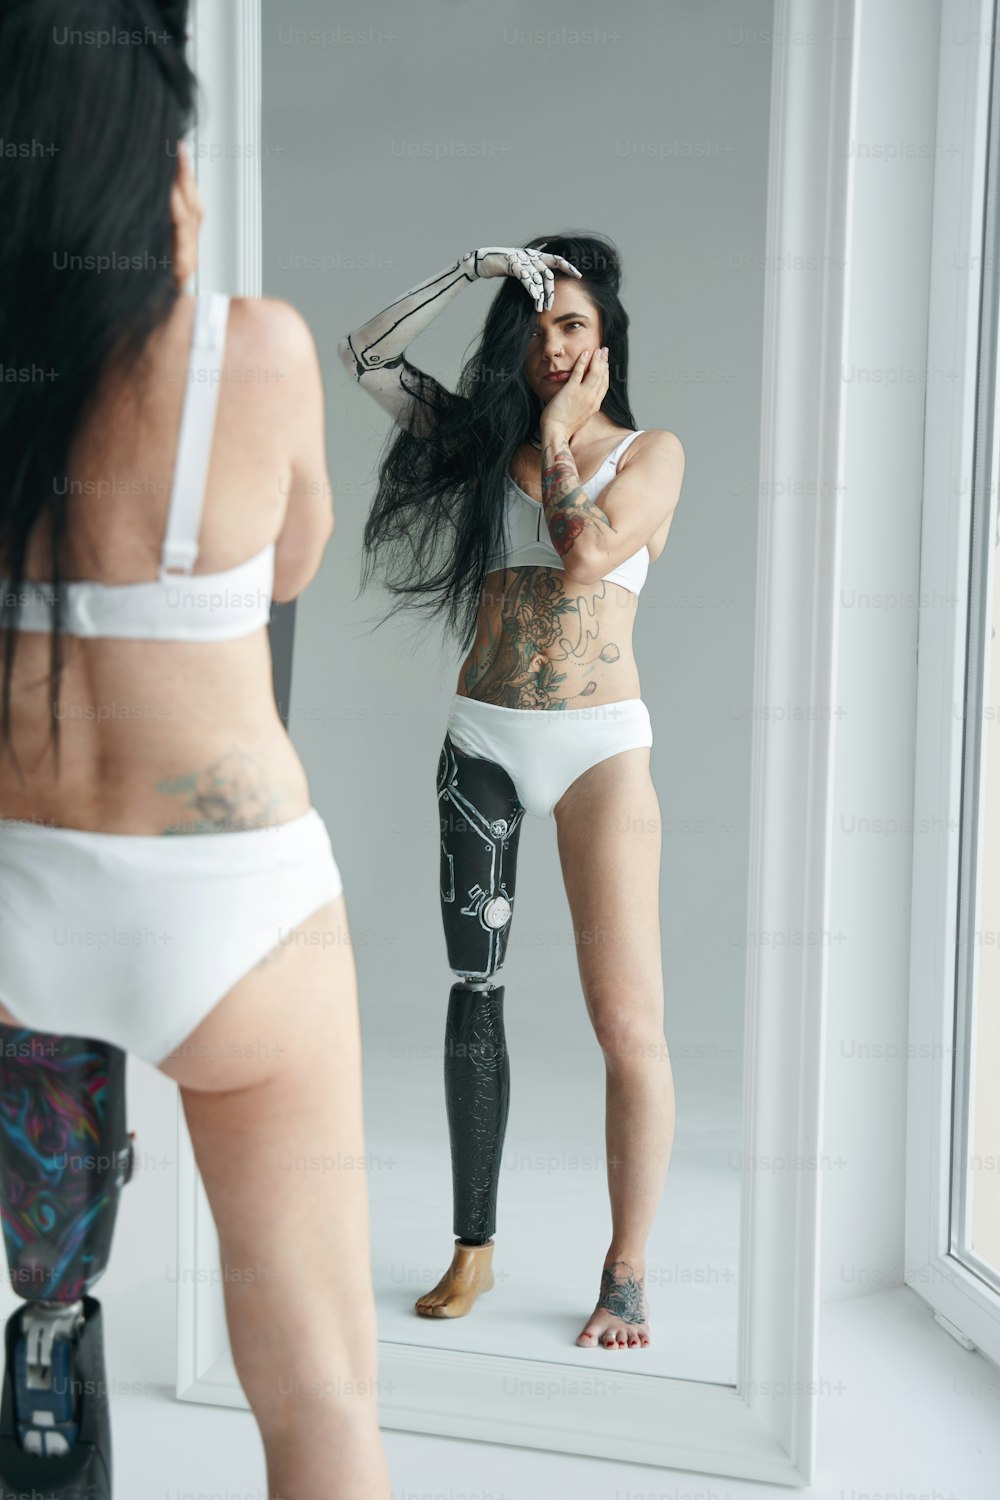 Donna bruna con aspetto insolito e futuristica body art droide. Ragazza in piedi davanti allo specchio e guardando il suo riflesso. Fotografia in studio